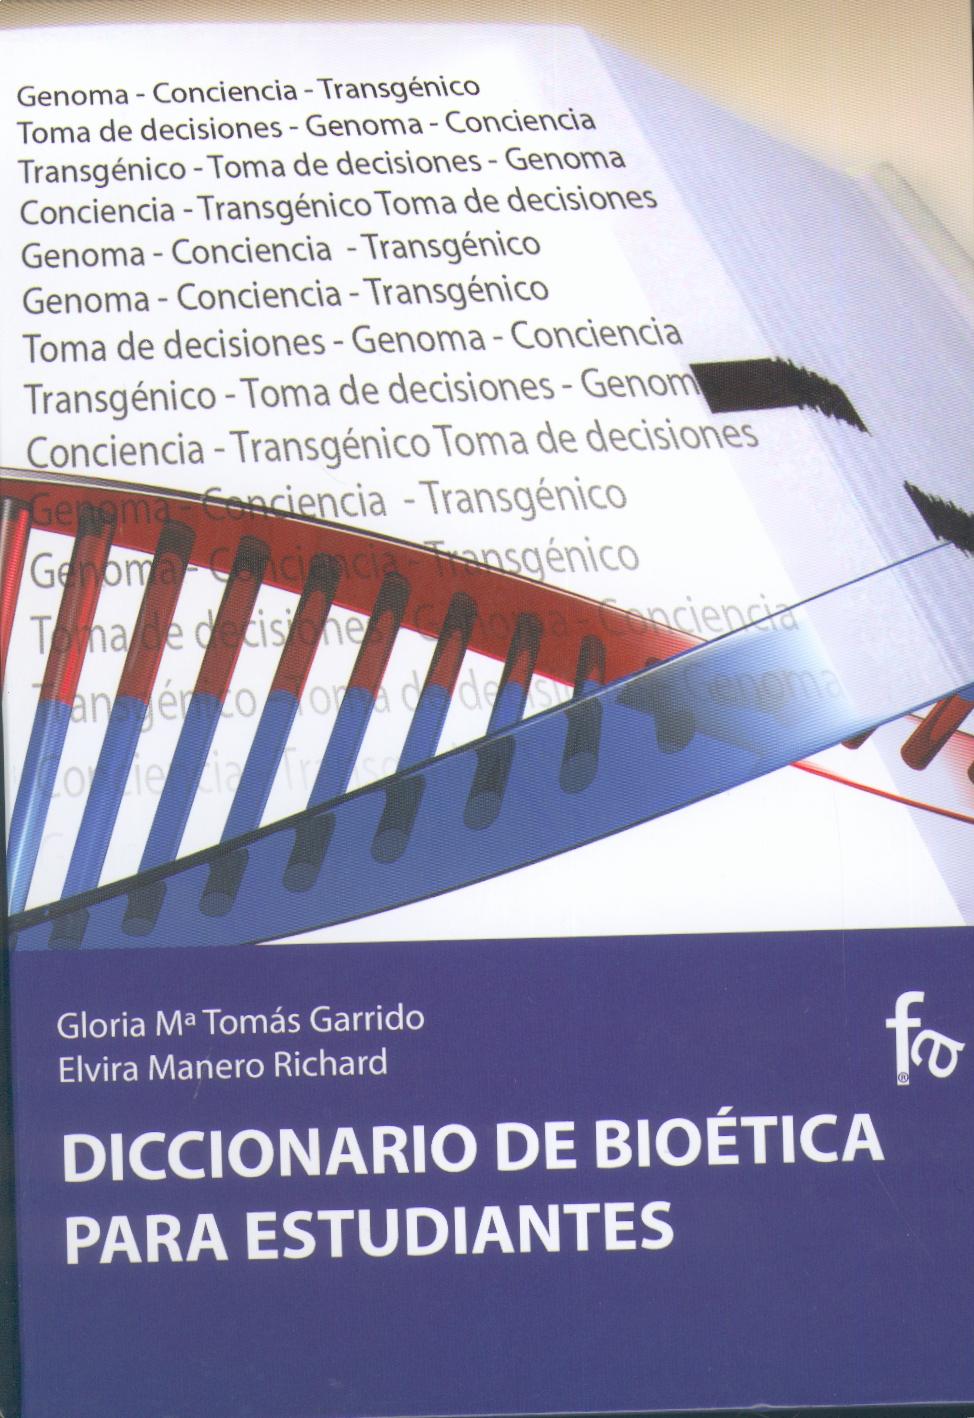 Diccionario de Bioética para Estudiantes